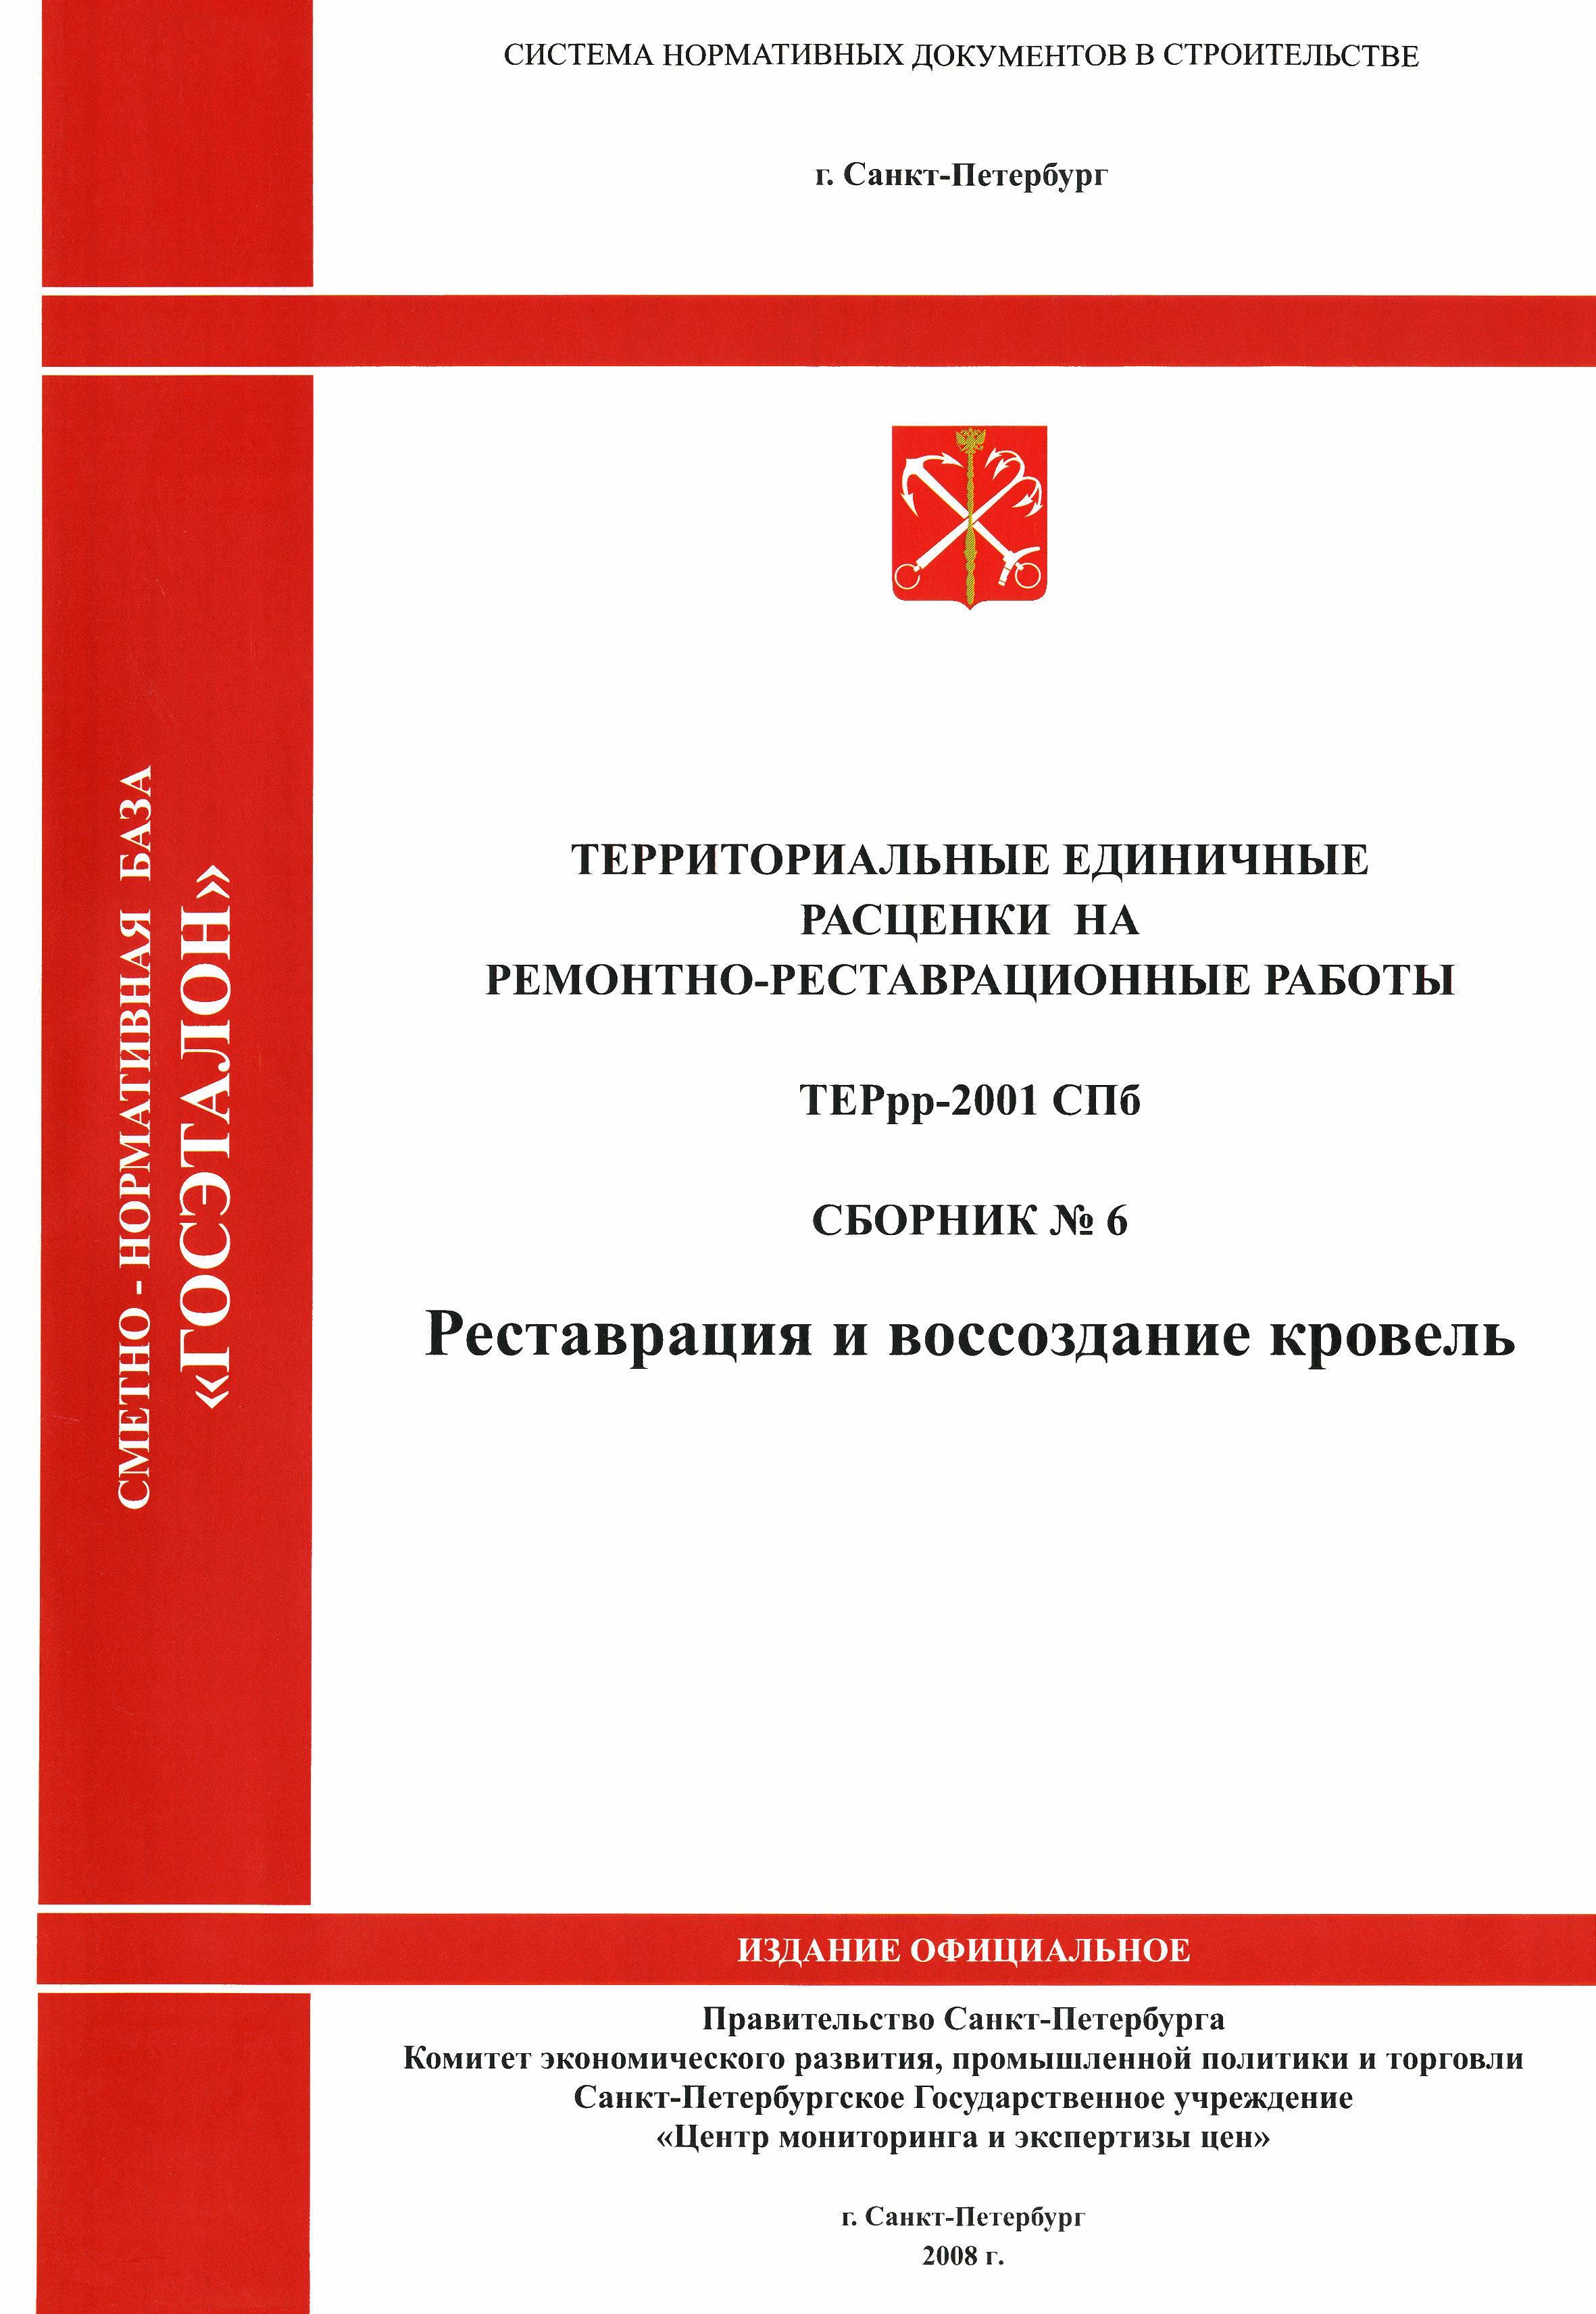 ТЕРрр 2001-06 СПб